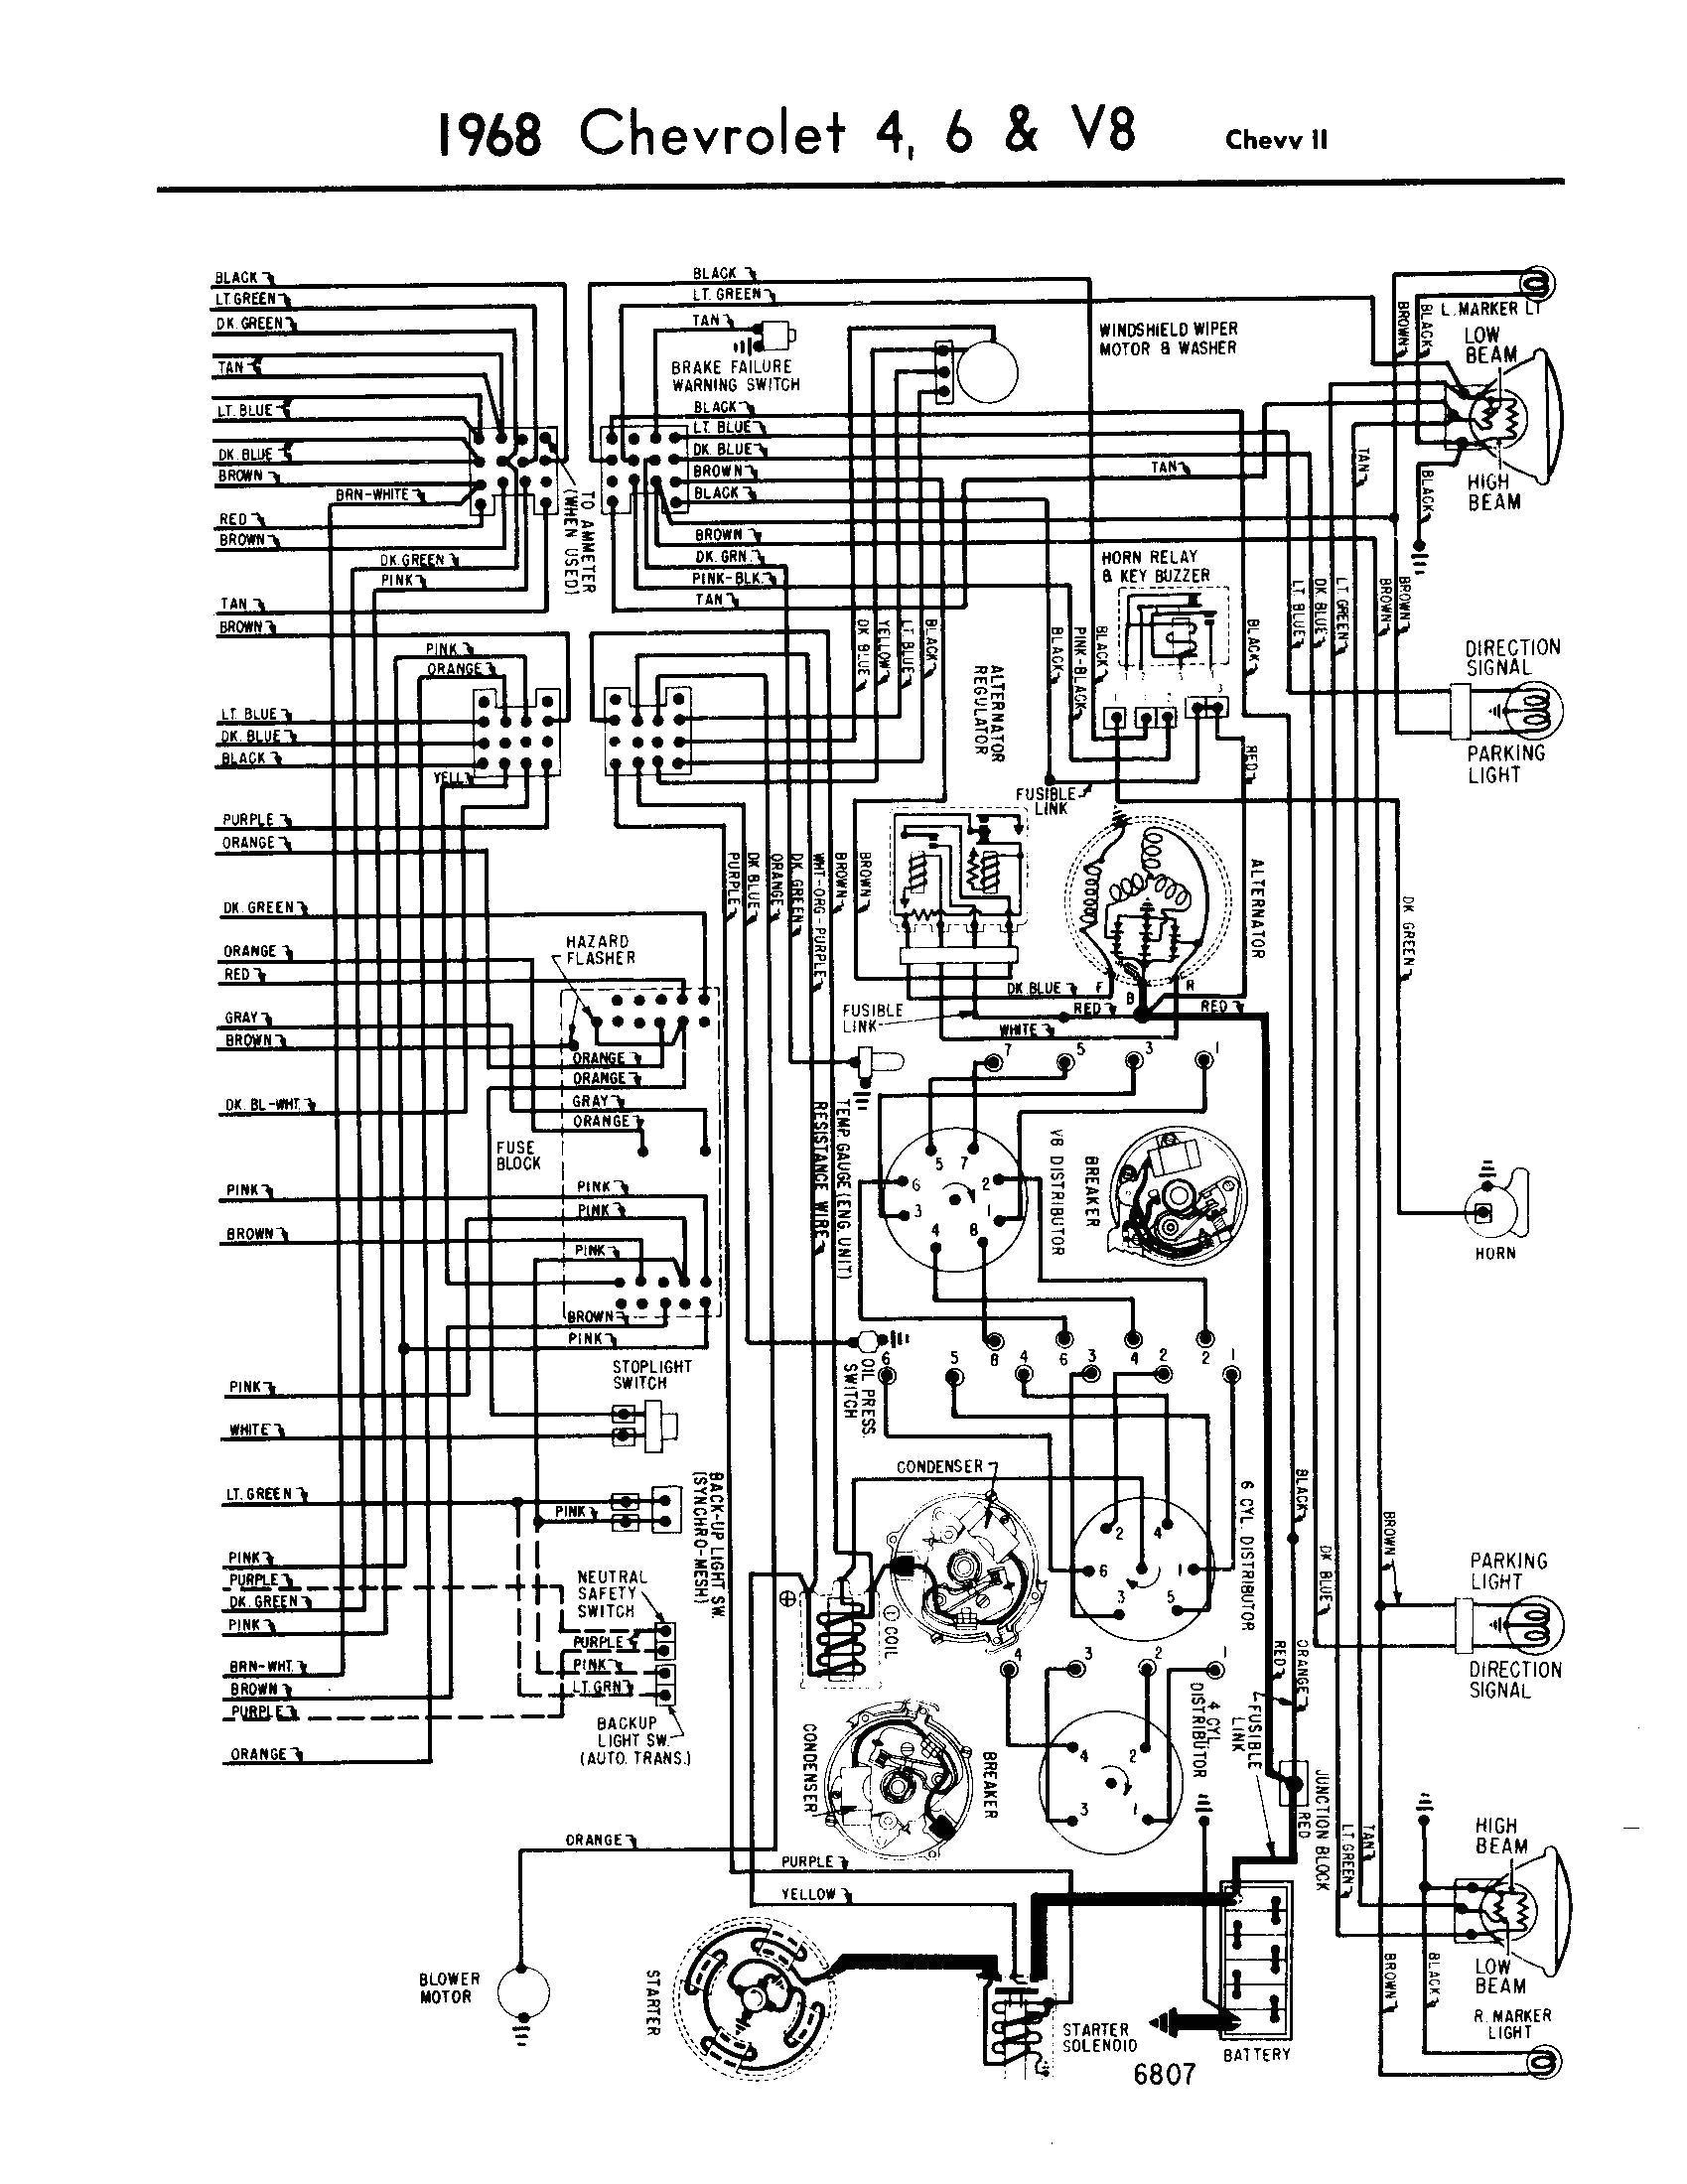 1967 chevy impala gas gauge wiring diagram schema wiring diagram 1967 chevy impala gas gauge wiring